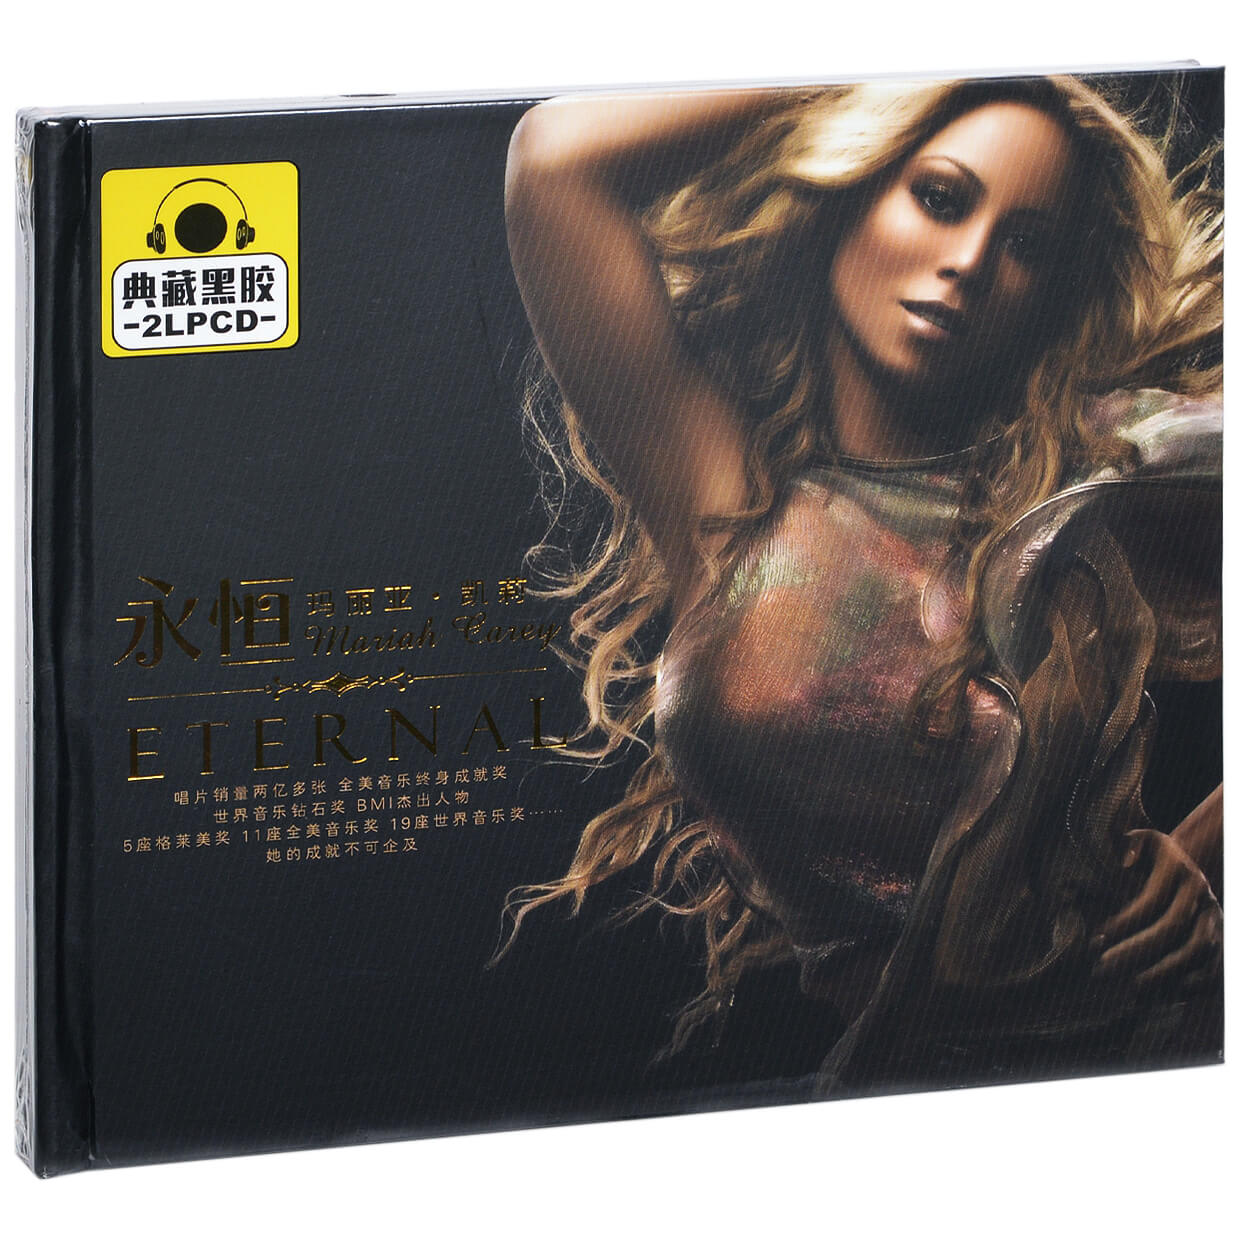 正版玛丽亚凯莉永恒精选专辑车载cd碟片唱片光盘2cd黑胶